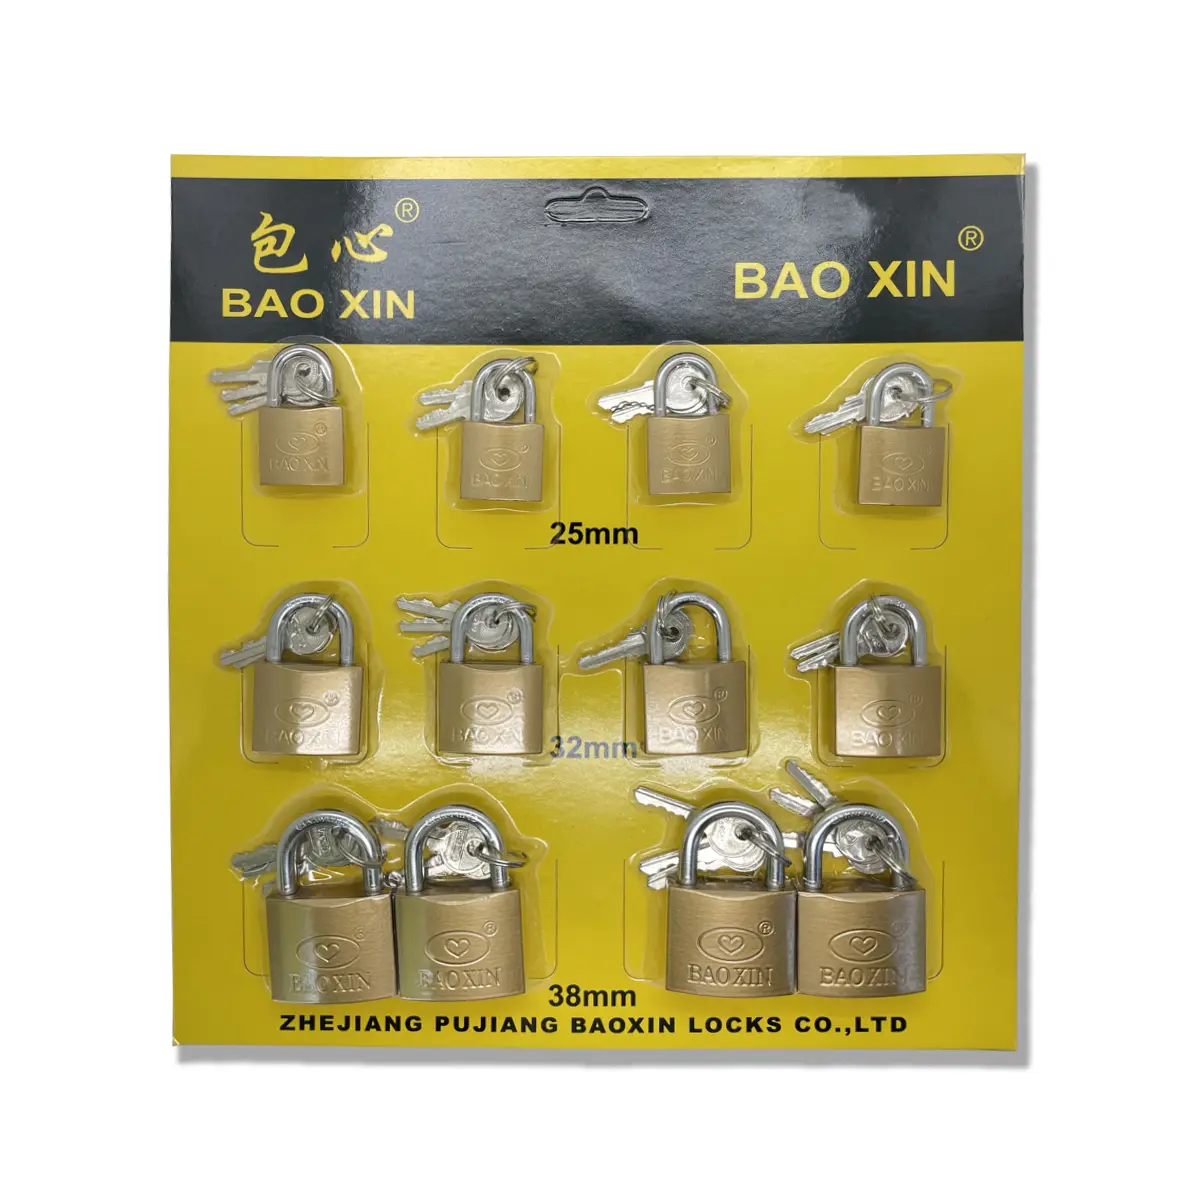 Baoxin pabrik kualitas tinggi Harga wajar industri gembok kualitas kunci yang sama emas pemasok penjaga keamanan gembok